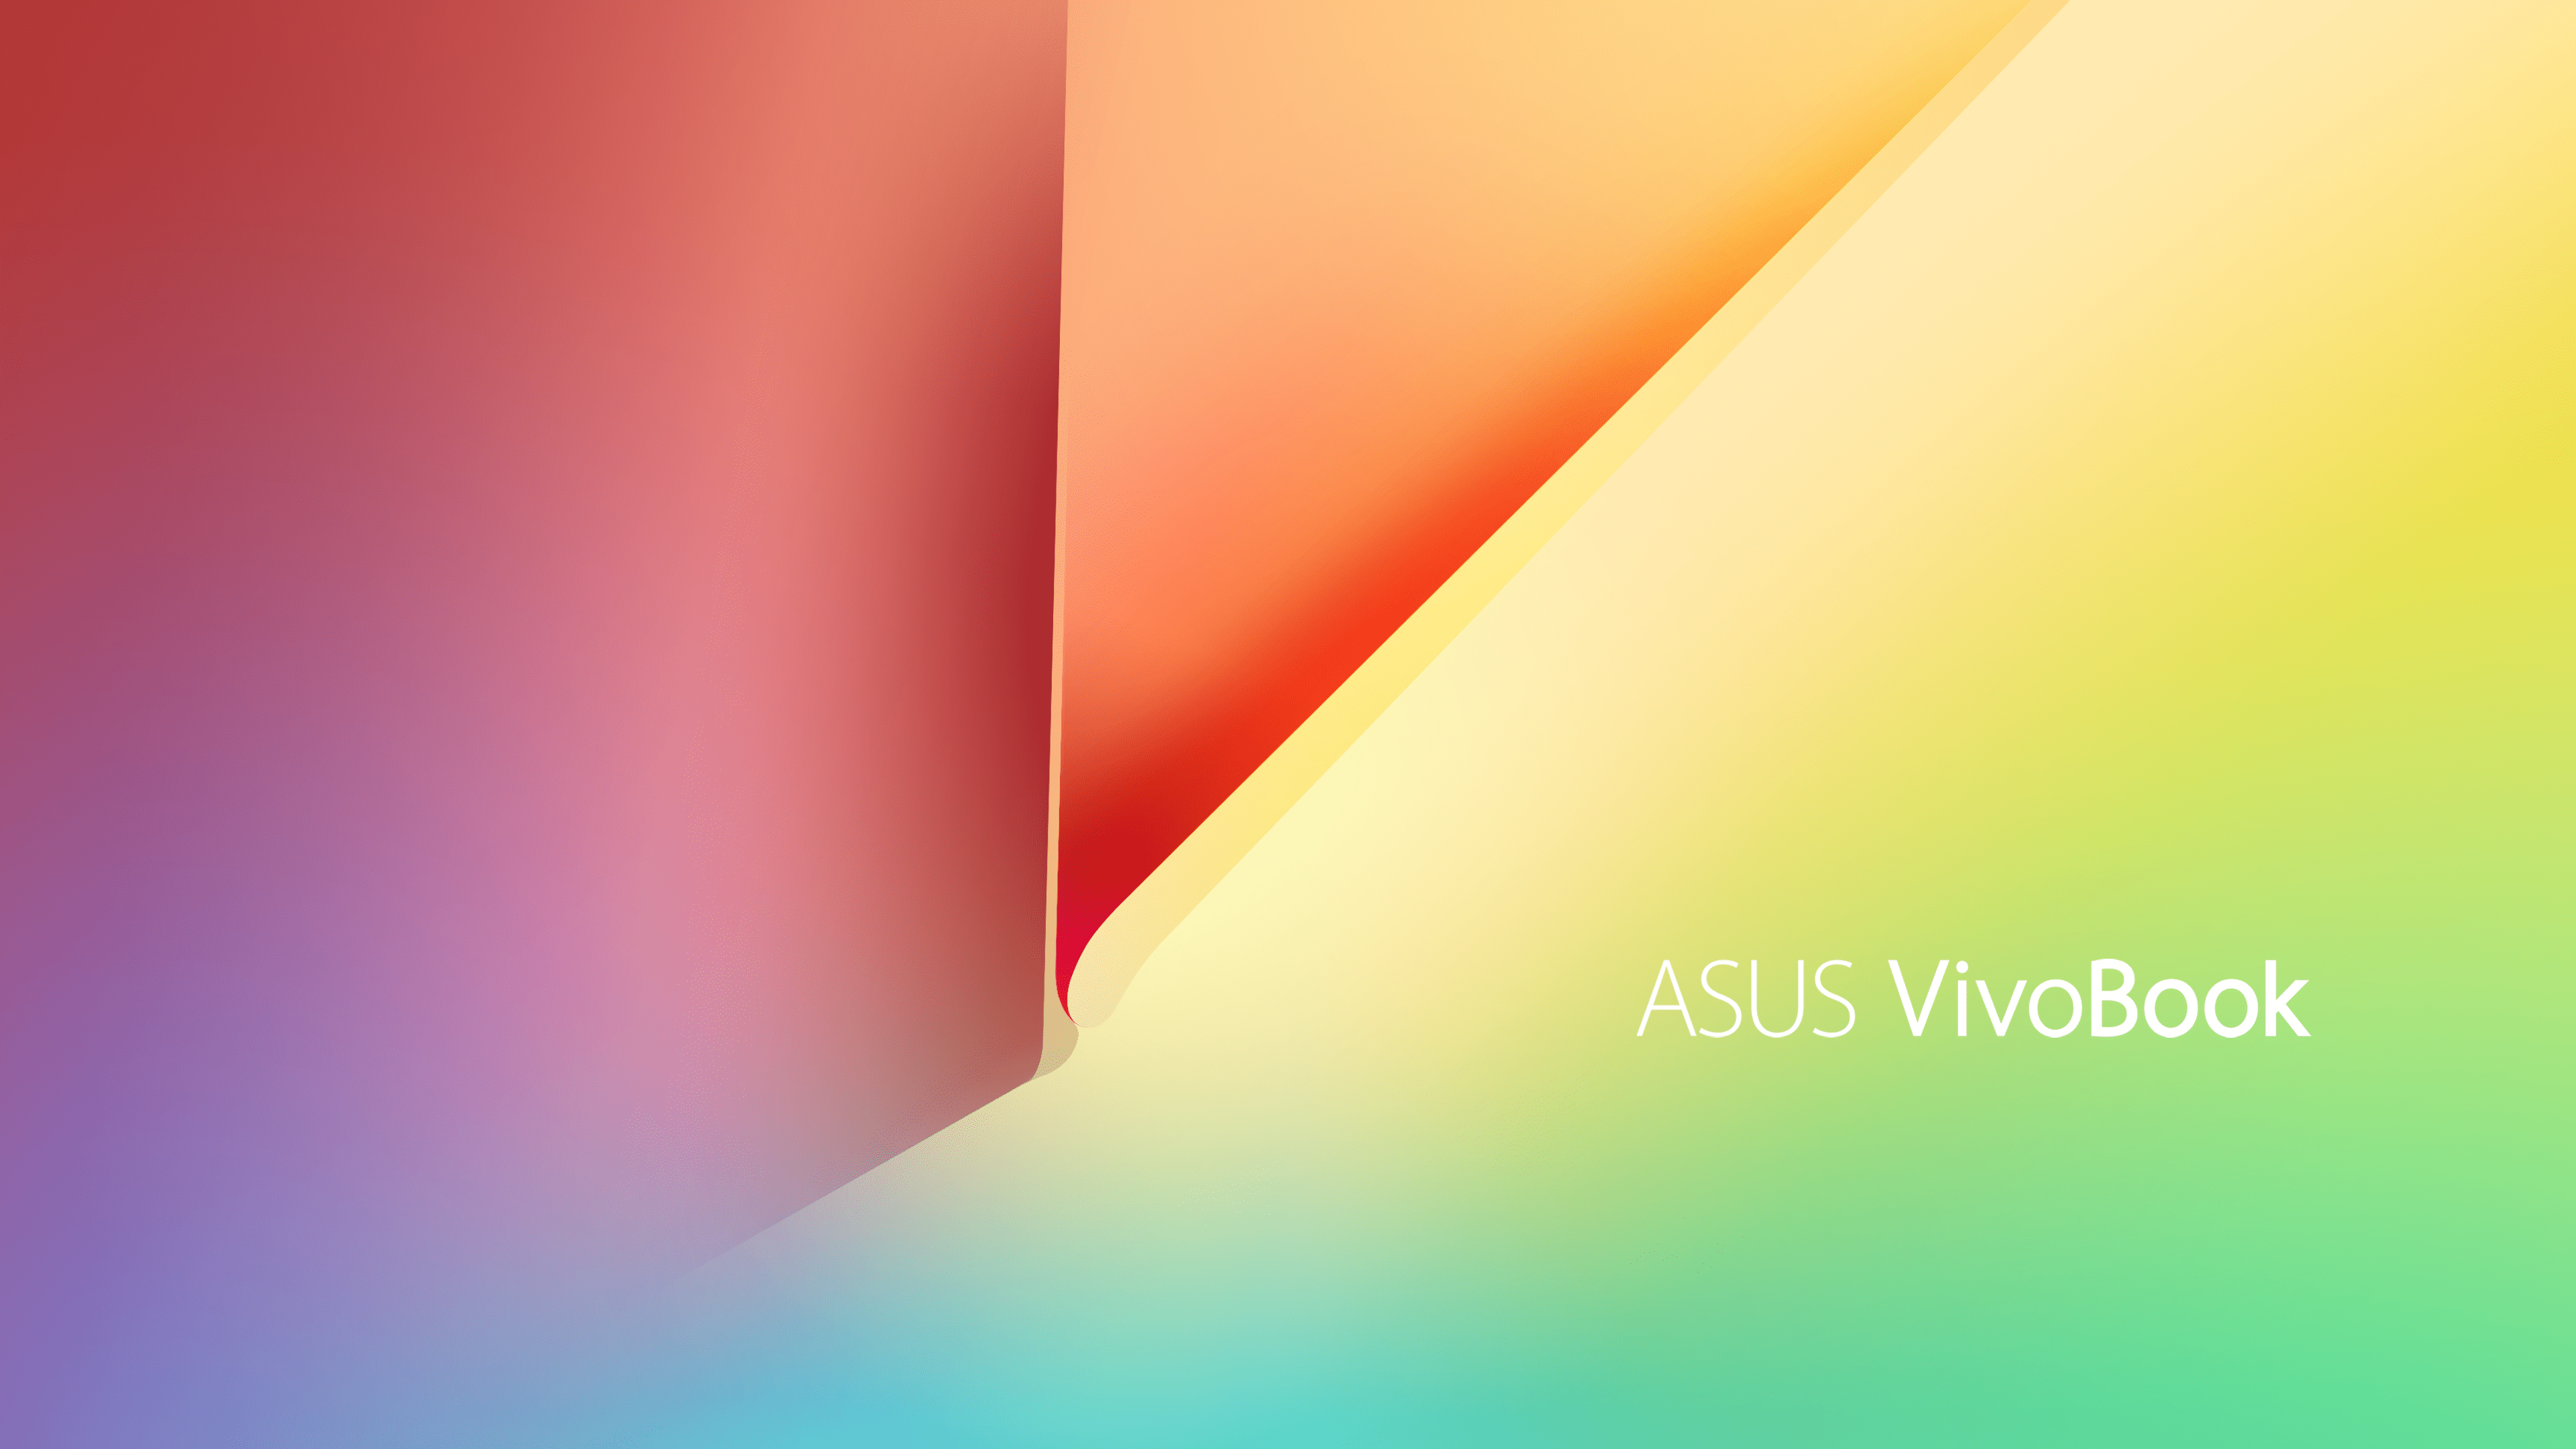 Asus Vivobook 15 Wallpapers - Lấy cảm hứng từ màn hình cảm ứng đẹp mắt của Asus Vivobook 15 với bộ sưu tập hình nền độc đáo. Từ những bức ảnh đơn giản đến các hình ảnh phức tạp, bạn chắc chắn sẽ tìm thấy một bức tranh nền ấn tượng cho máy tính của mình.